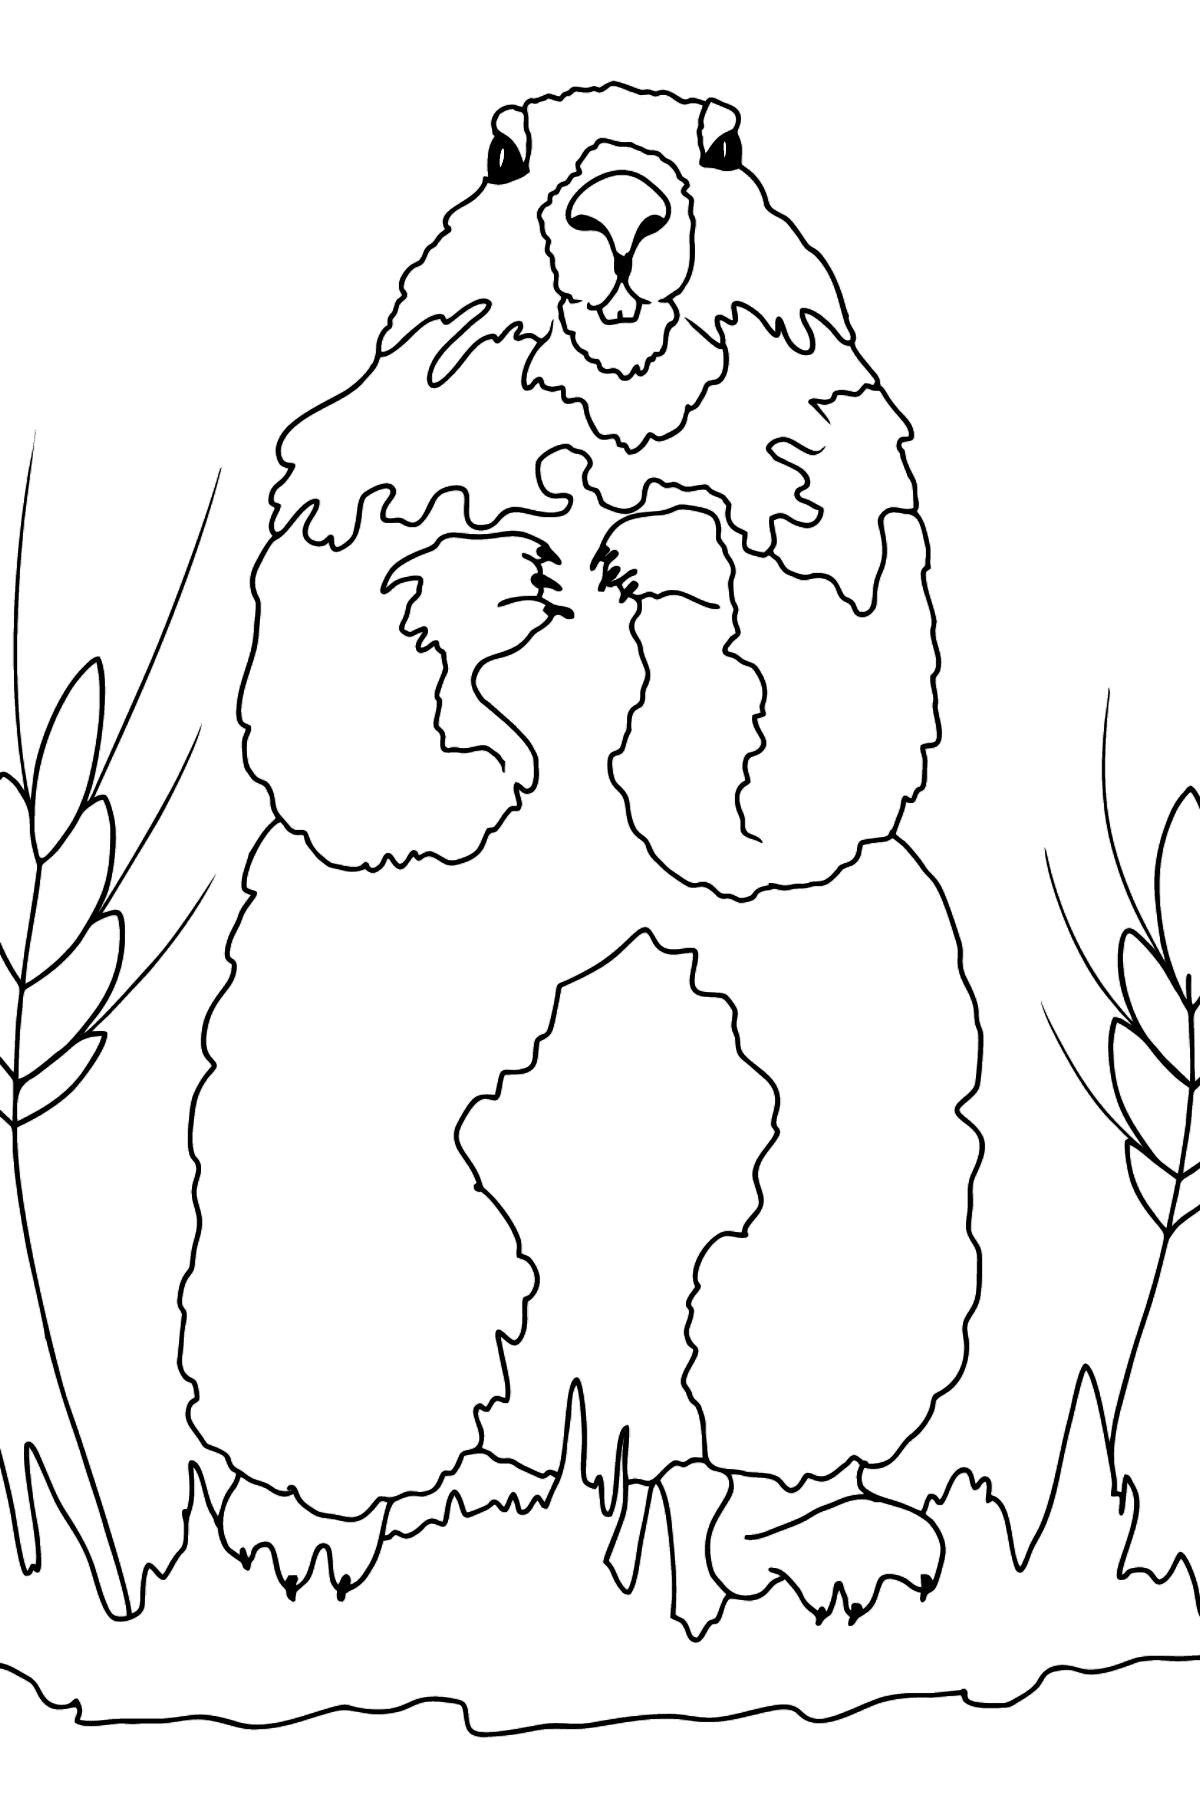 Desenho de marmota para colorir - Imagens para Colorir para Crianças